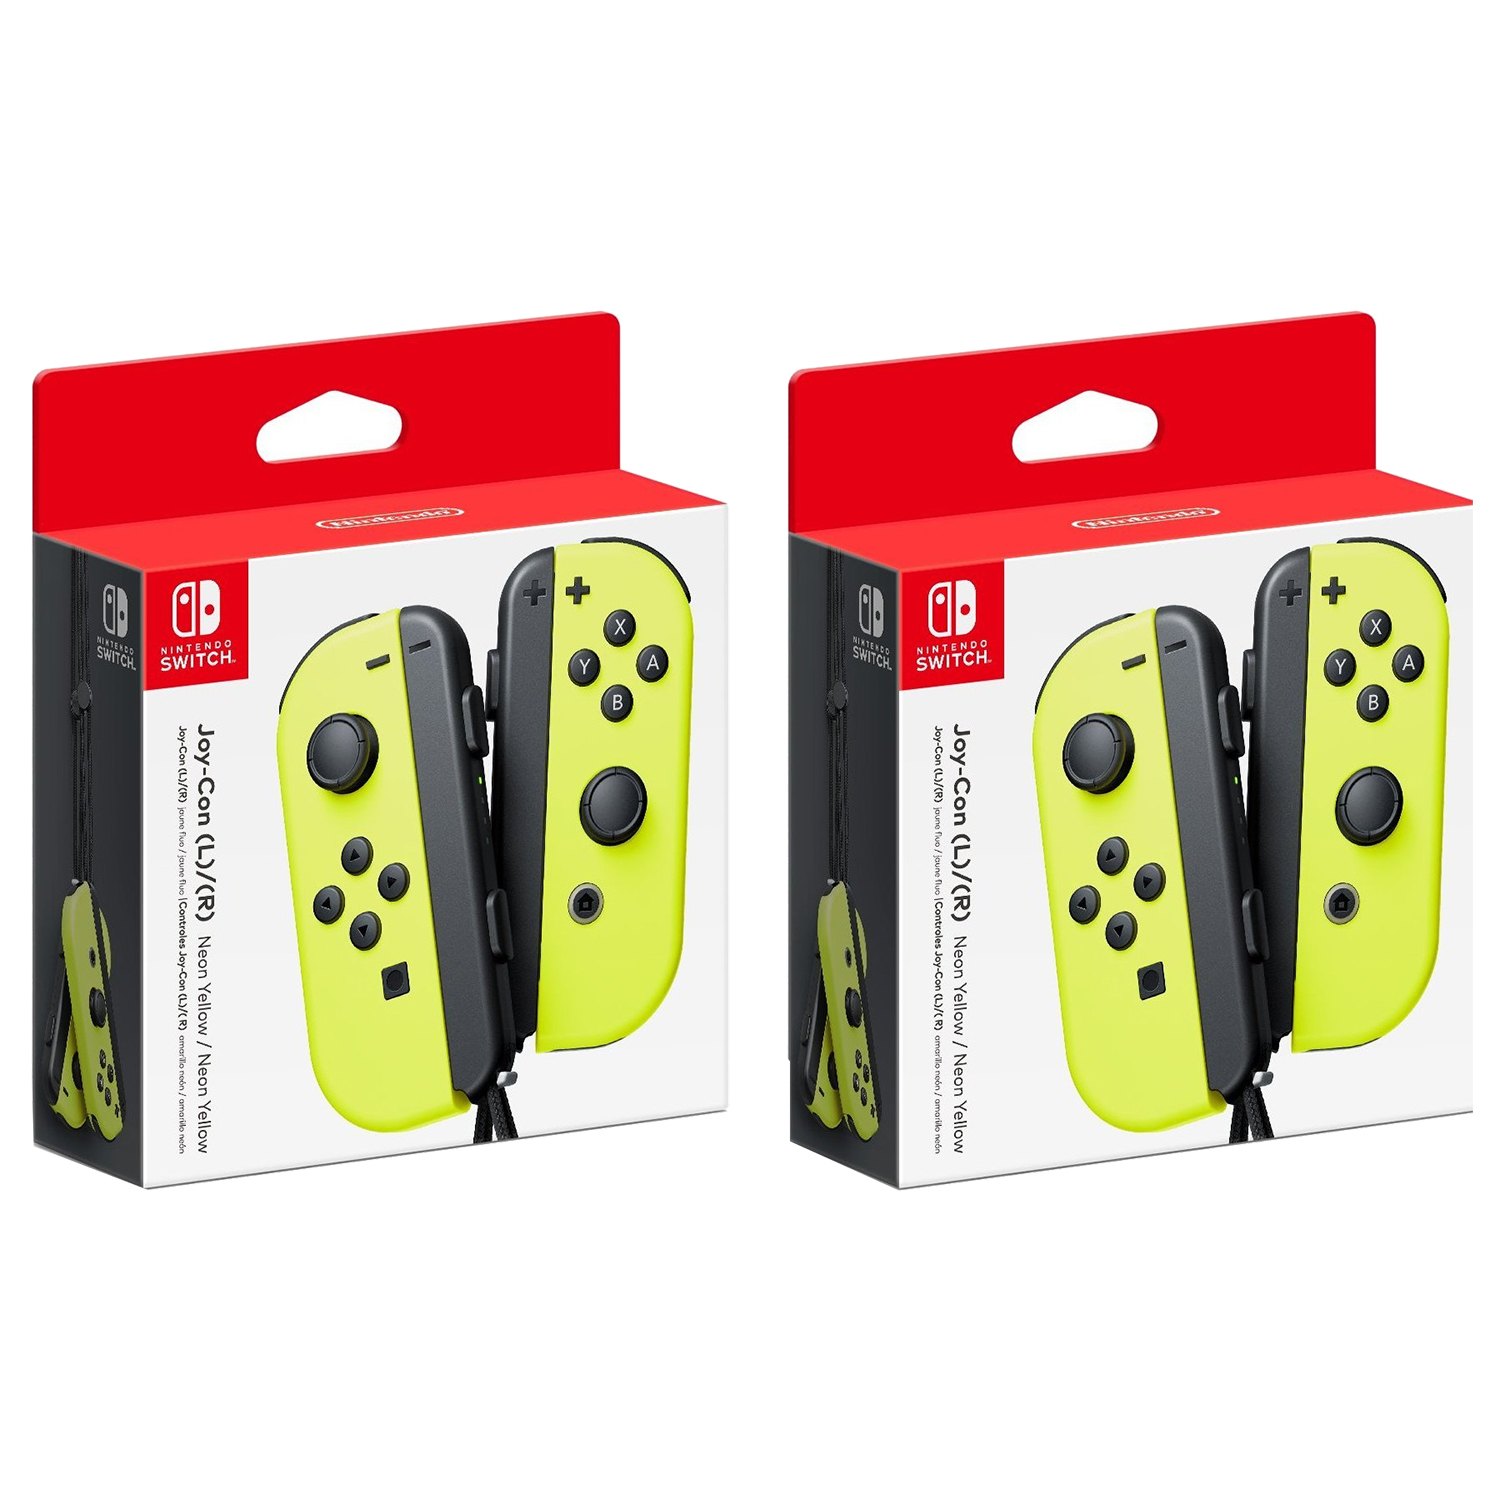 2件装 Nintendo Switch Joy-Con (L/R) 无线控制手柄 各色 $131.70